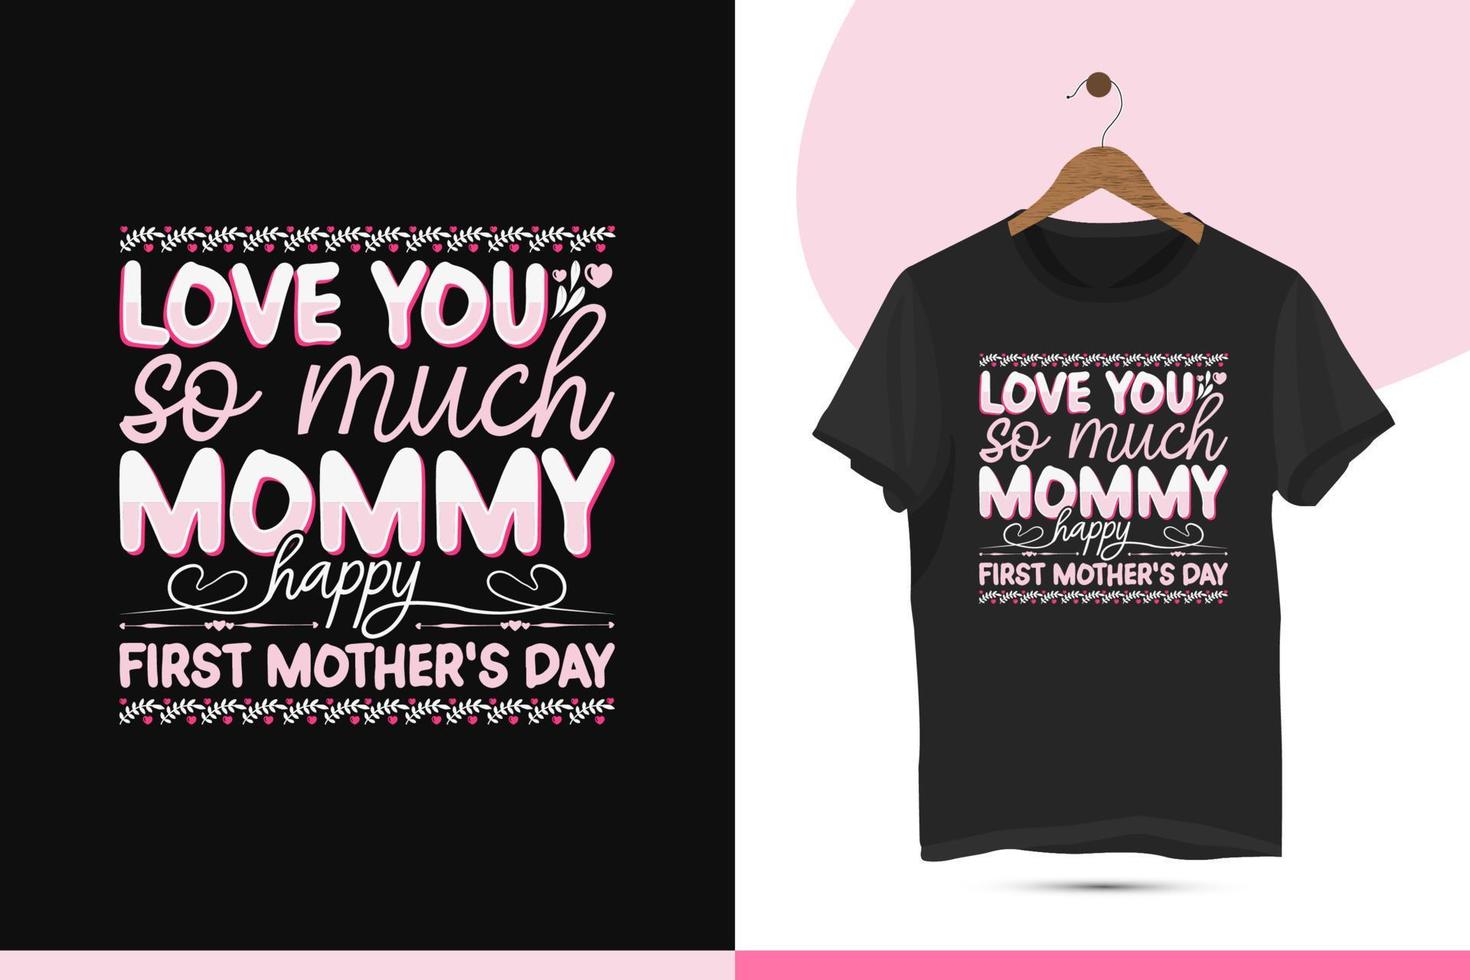 mors dag typografi t-shirt design vektor mall. tryckfärdig skjorta illustration för mammas gåva. kärlek du så mycket mamma Lycklig först mors dag.